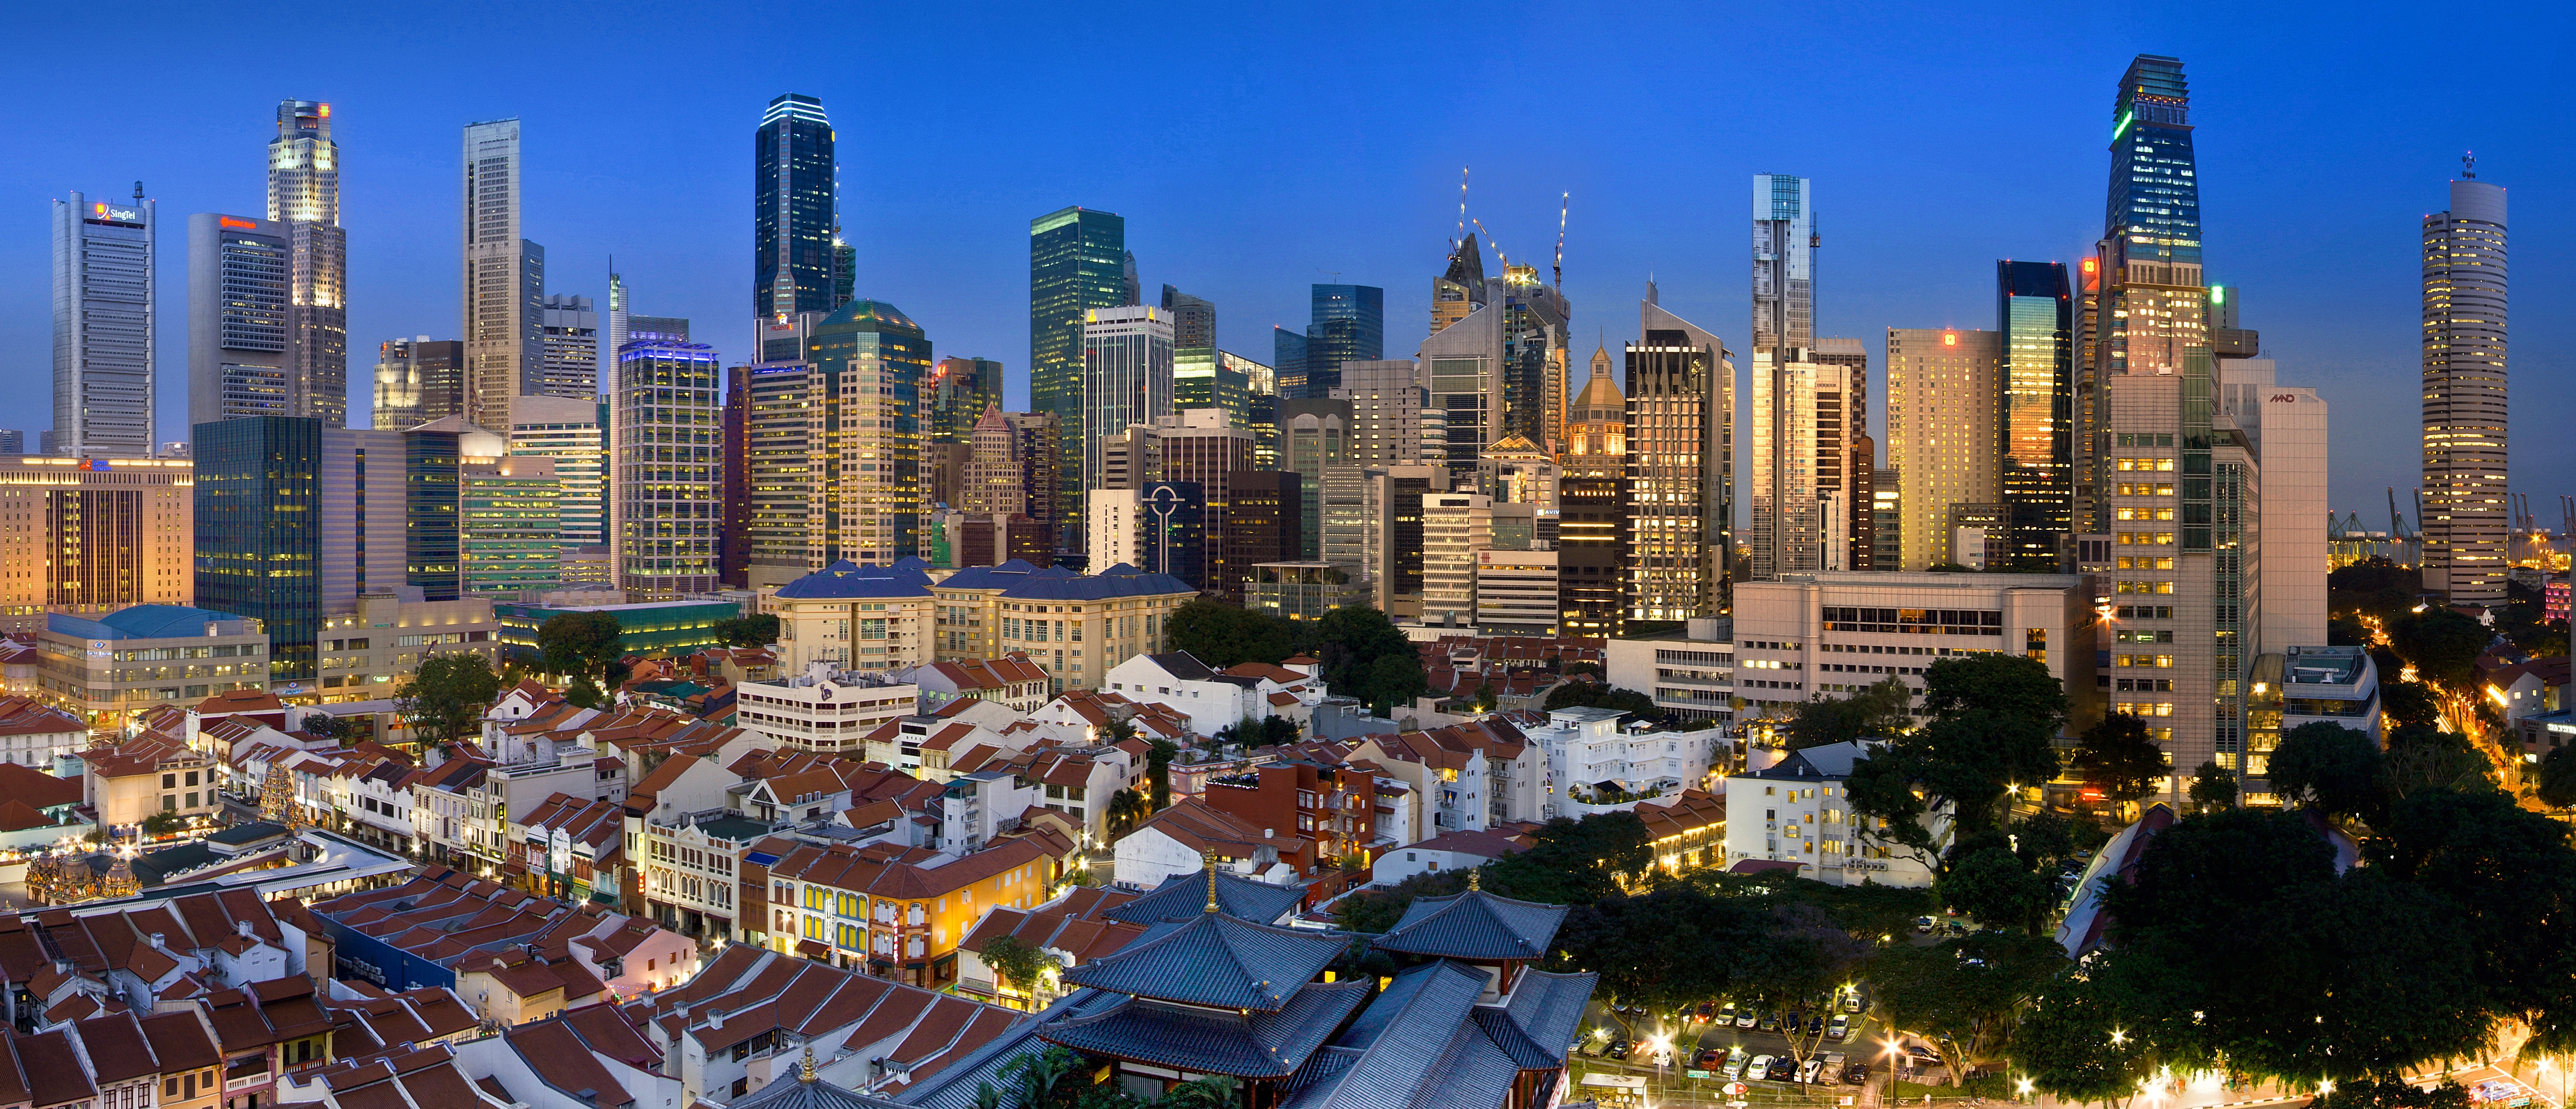 Singapore panorama